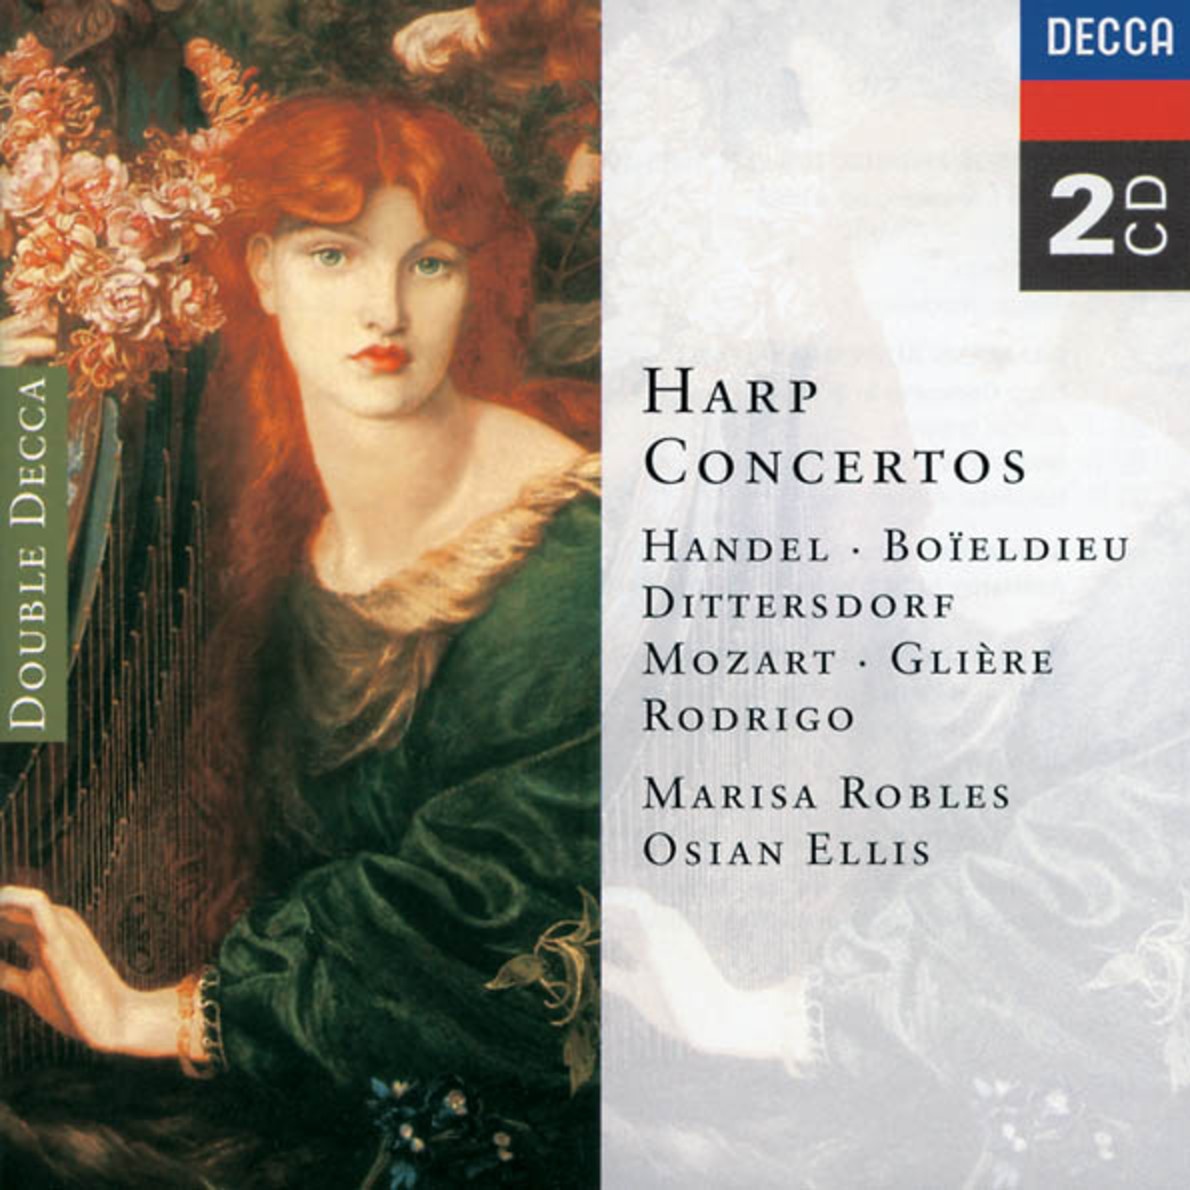 Concierto de Aranjuez for Guitar and Orchestra - Transcribed for harp & orchestra:1. Allegro con spirito